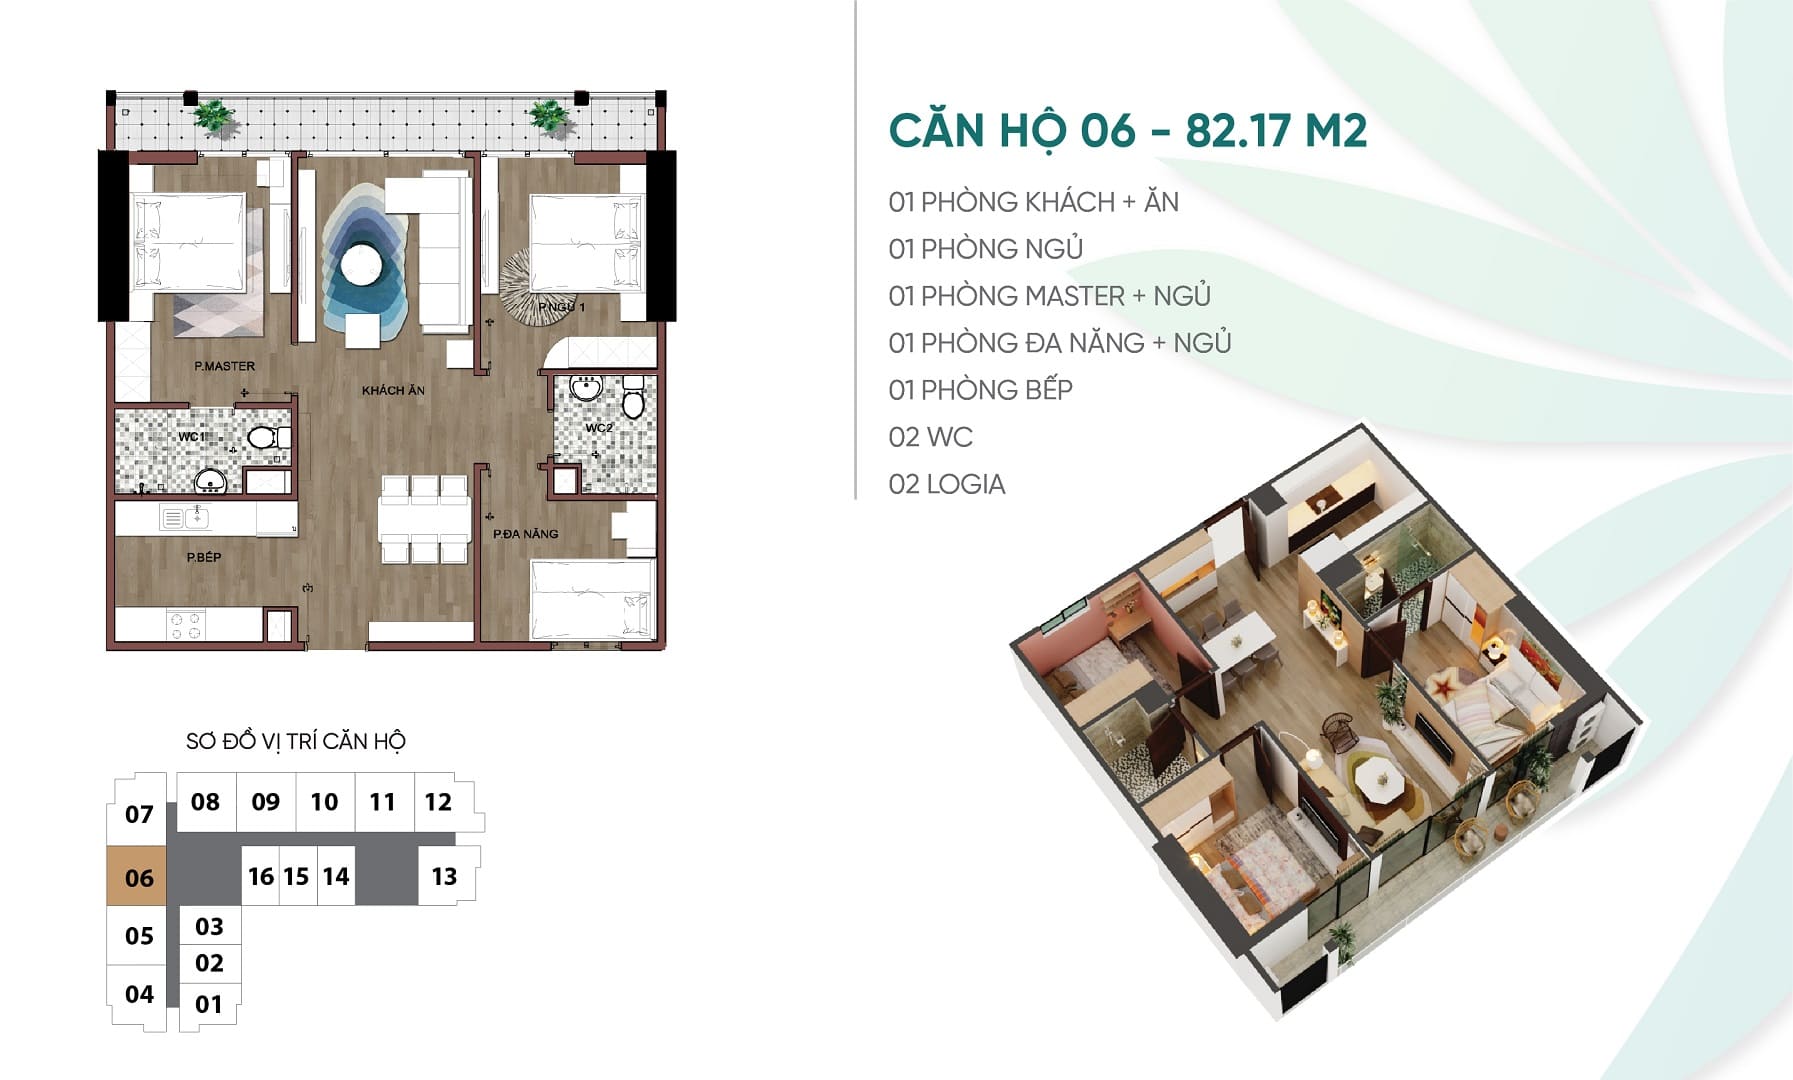 Thiết kế căn hộ chung cư số 06 An Bình Plaza 97 Trần Bình, Mỹ Đình, Nam Từ Liêm.